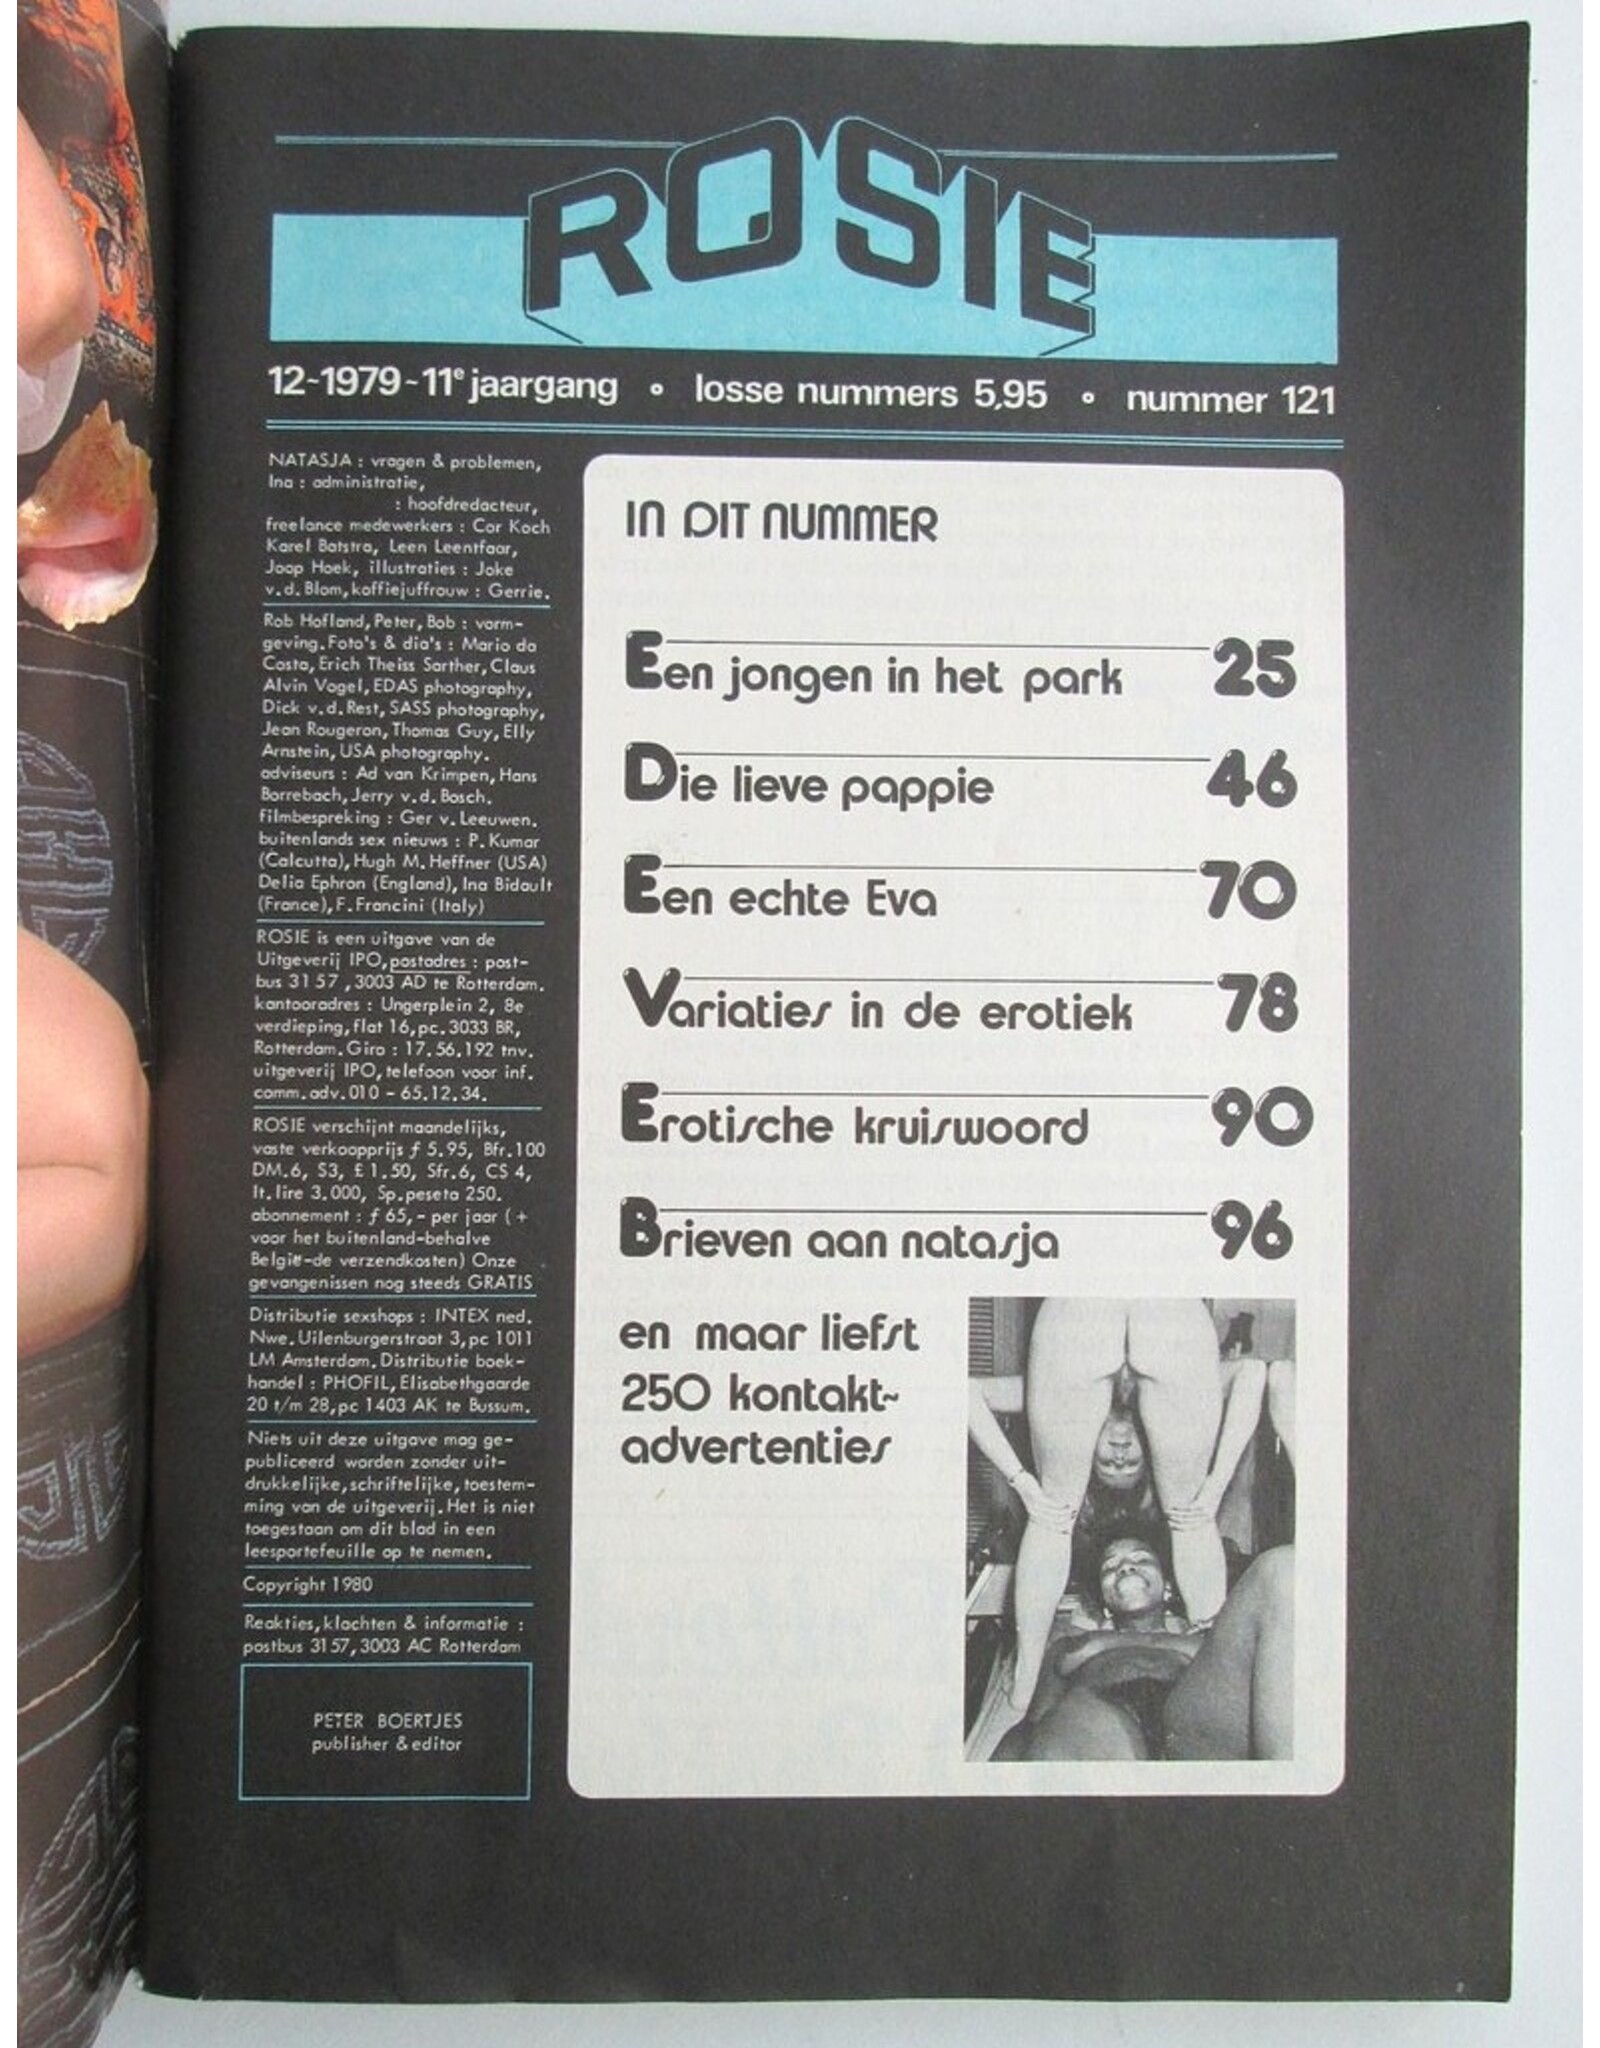 Peter Boertjes [red.] - Rosie nummer 121 - 11e Jaargang. Het blad dat kontakten legt!!!